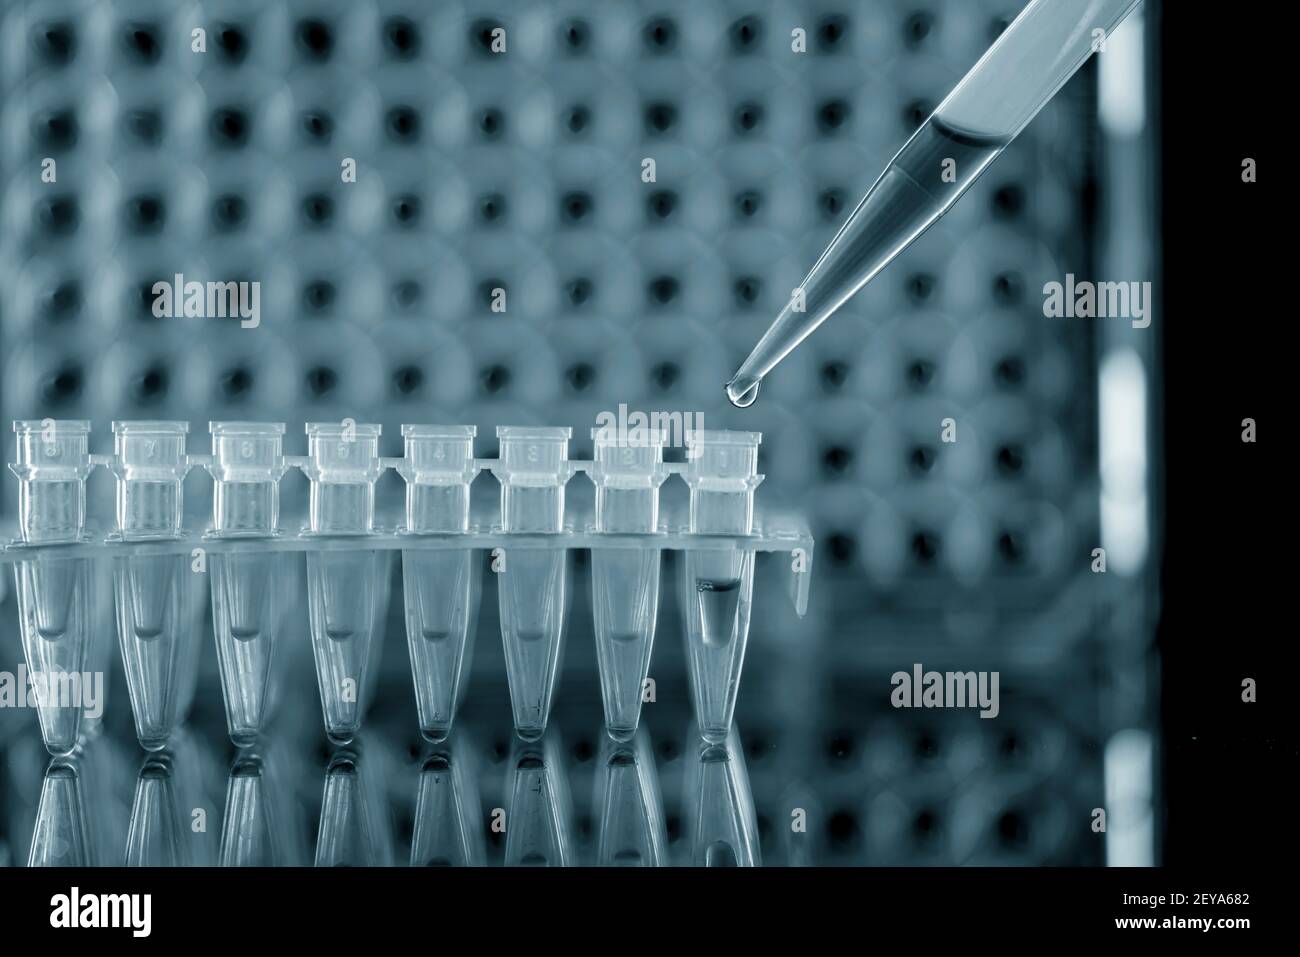 La recherche génétique, conceptual image Banque D'Images